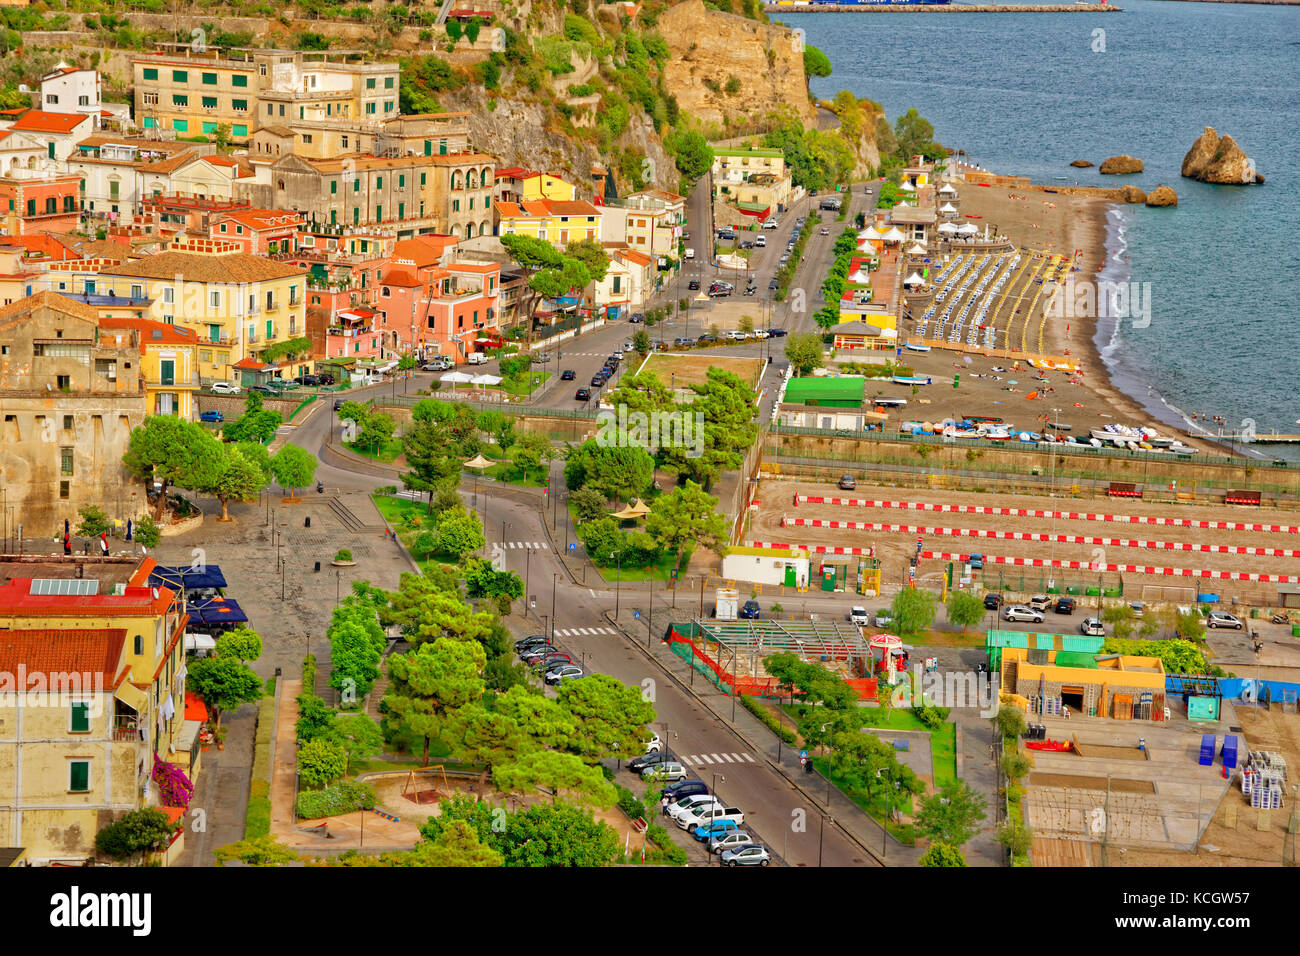 Vietri Sul Mare, Salerno, all'estremità orientale della Costiera Amalfitana in Italia meridionale. Foto Stock